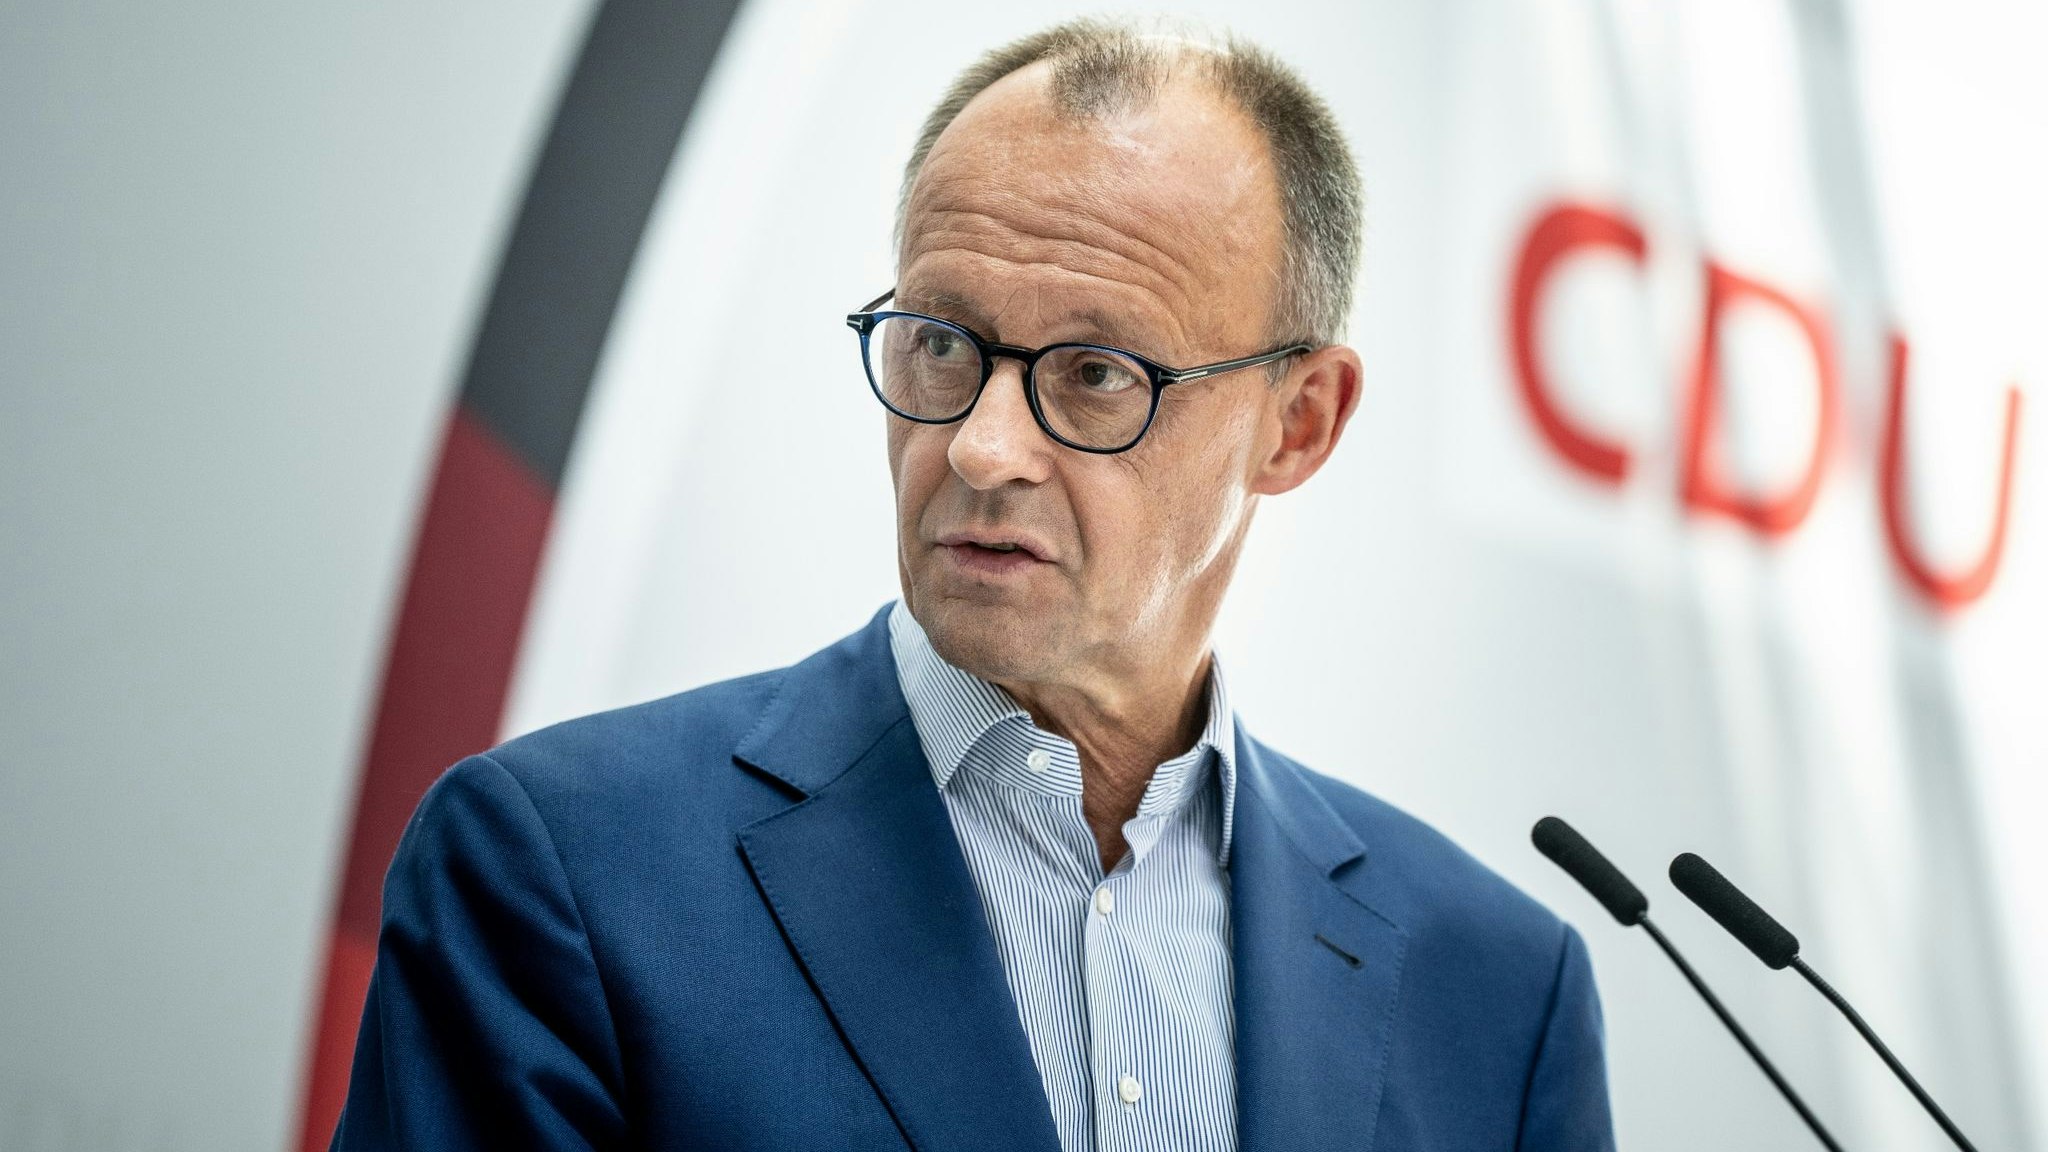 Friedrich Merz ist Bundesvorsitzender der CDU und Fraktionsvorsitzender der CDU/CSU-Fraktion. Foto: dpa/Kappeler